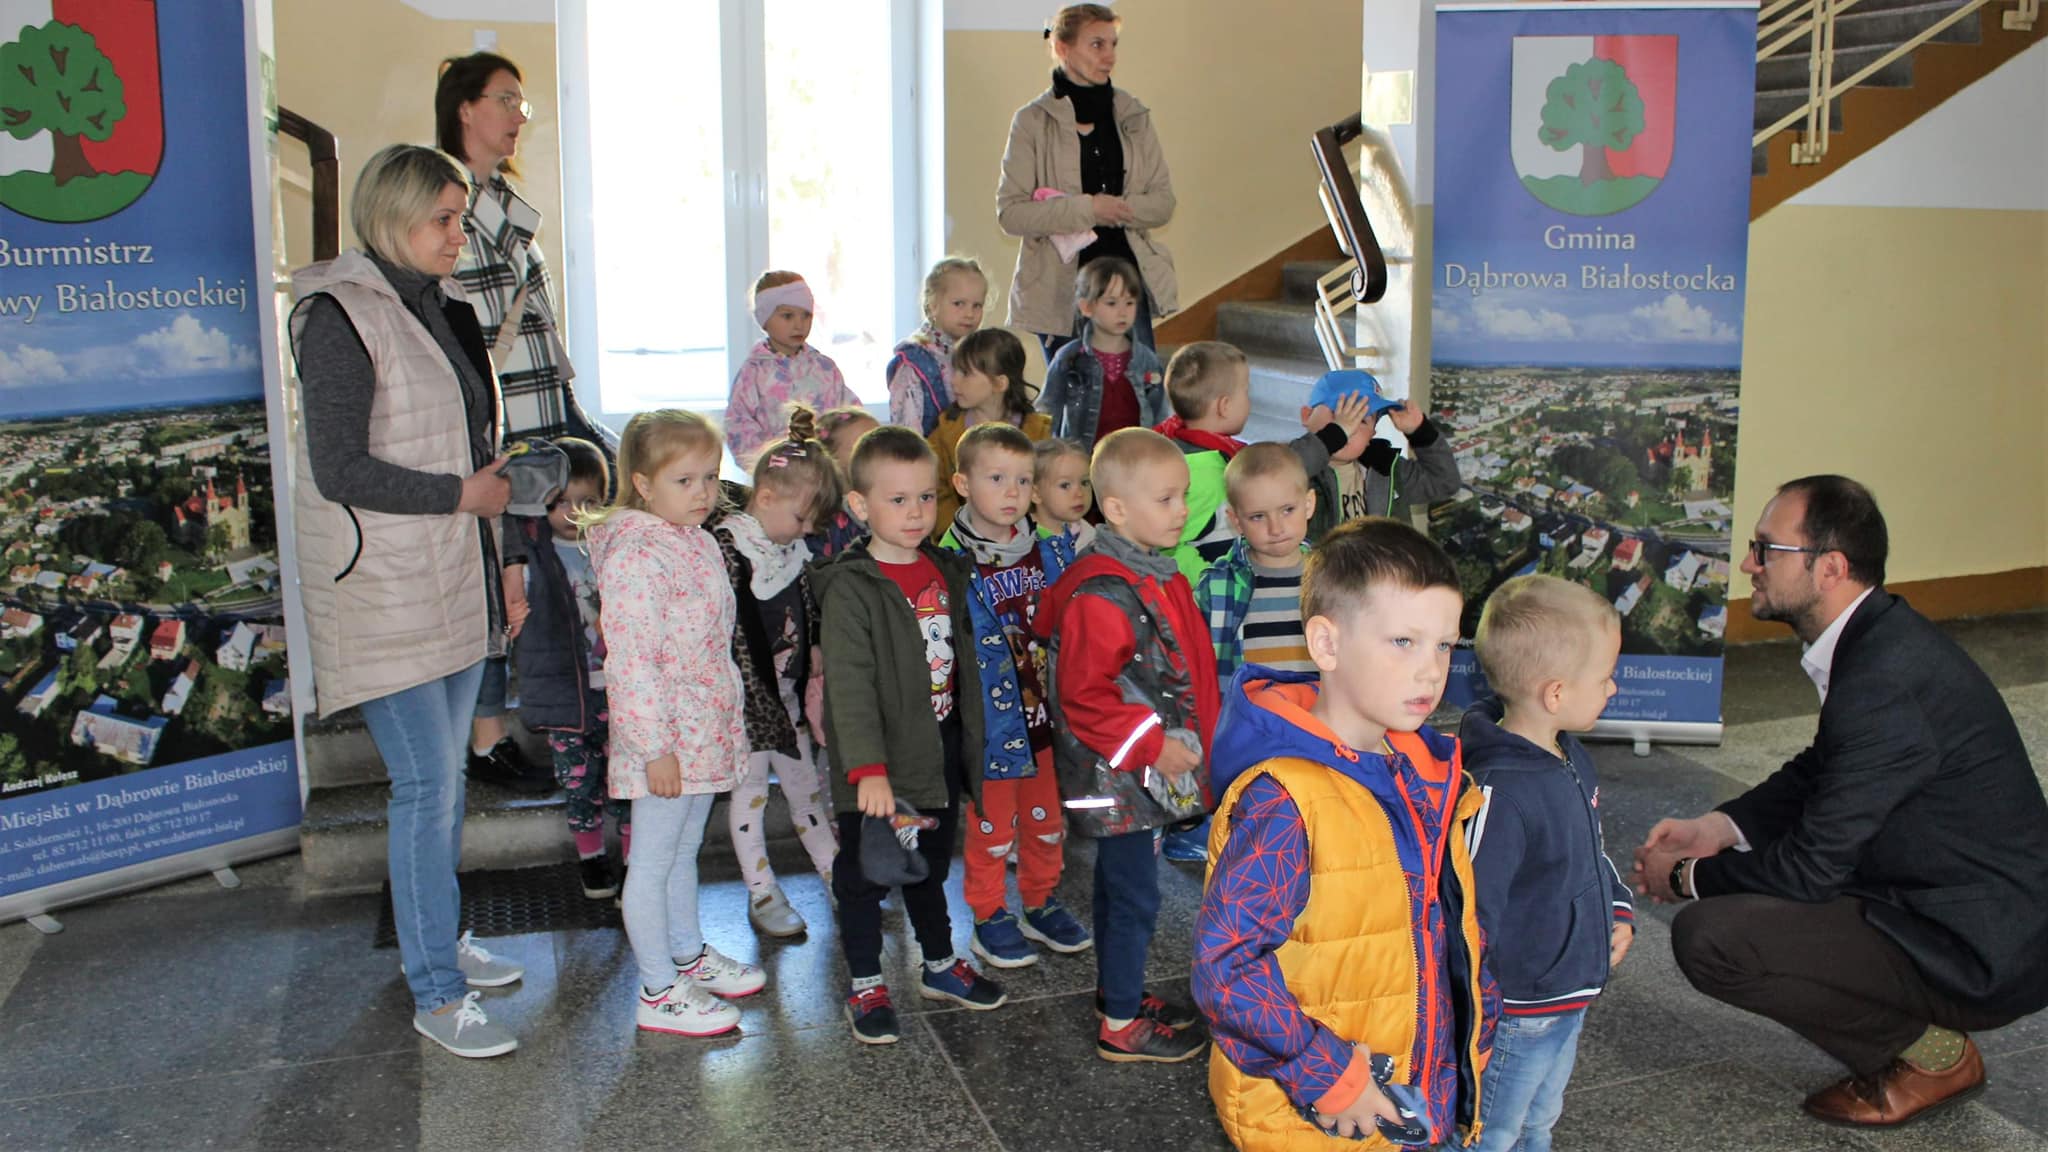 Burmistrz Dąbrowy Białostockiej na kucaka wita przedzkolaków w holu urzędu miejskiego